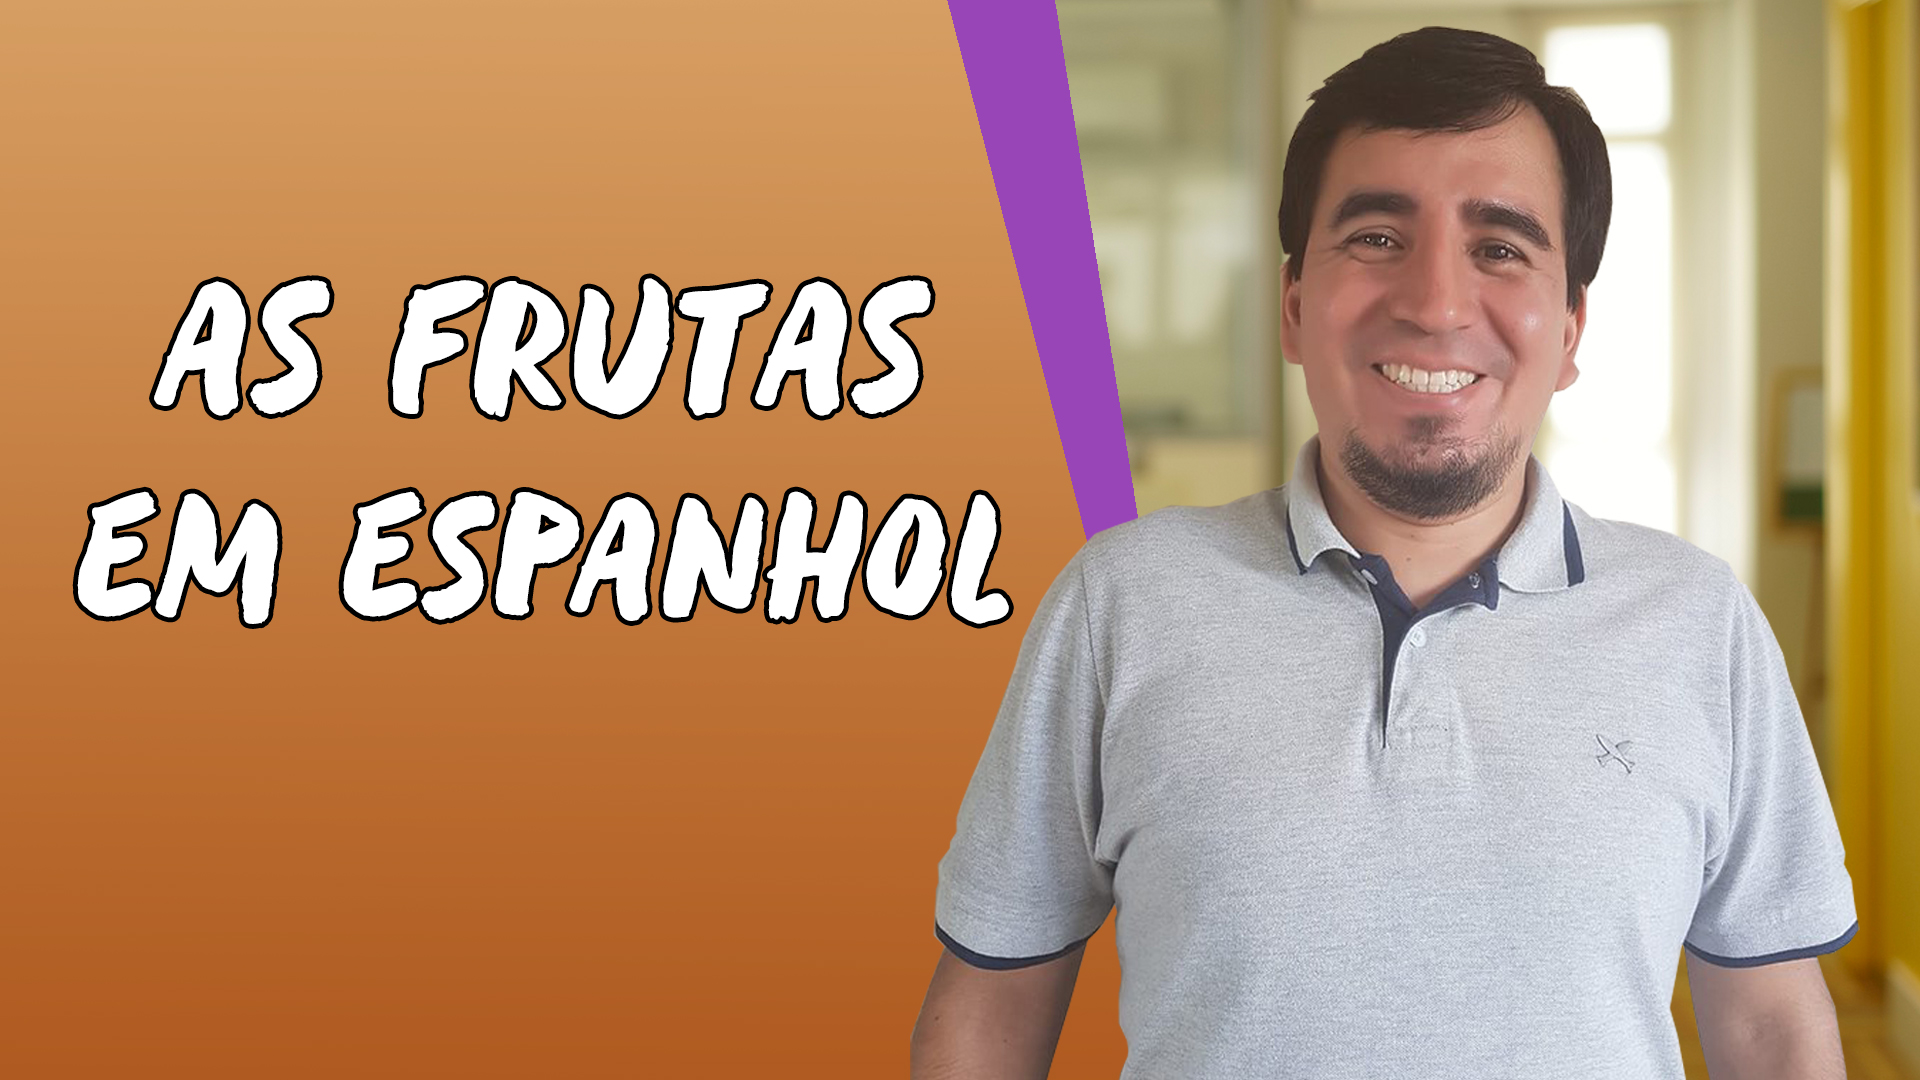 "As frutas em Espanhol" escrito sobre fundo laranja ao lado da imagem do professor